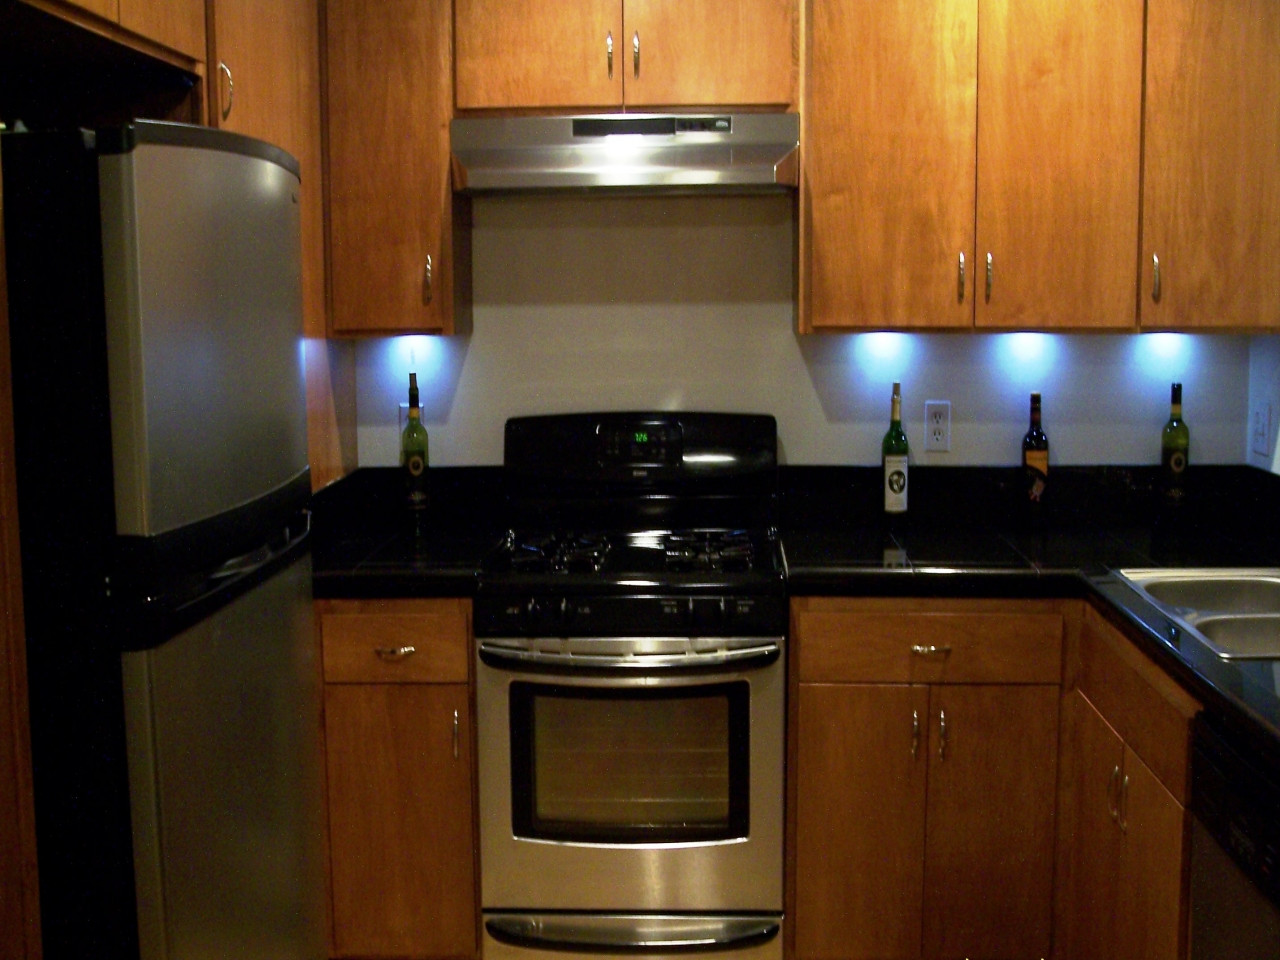 Under Cabinet Kitchen Lighting Options
 Under Cabinet Lighting Options Design Your Kitchen With Ideas